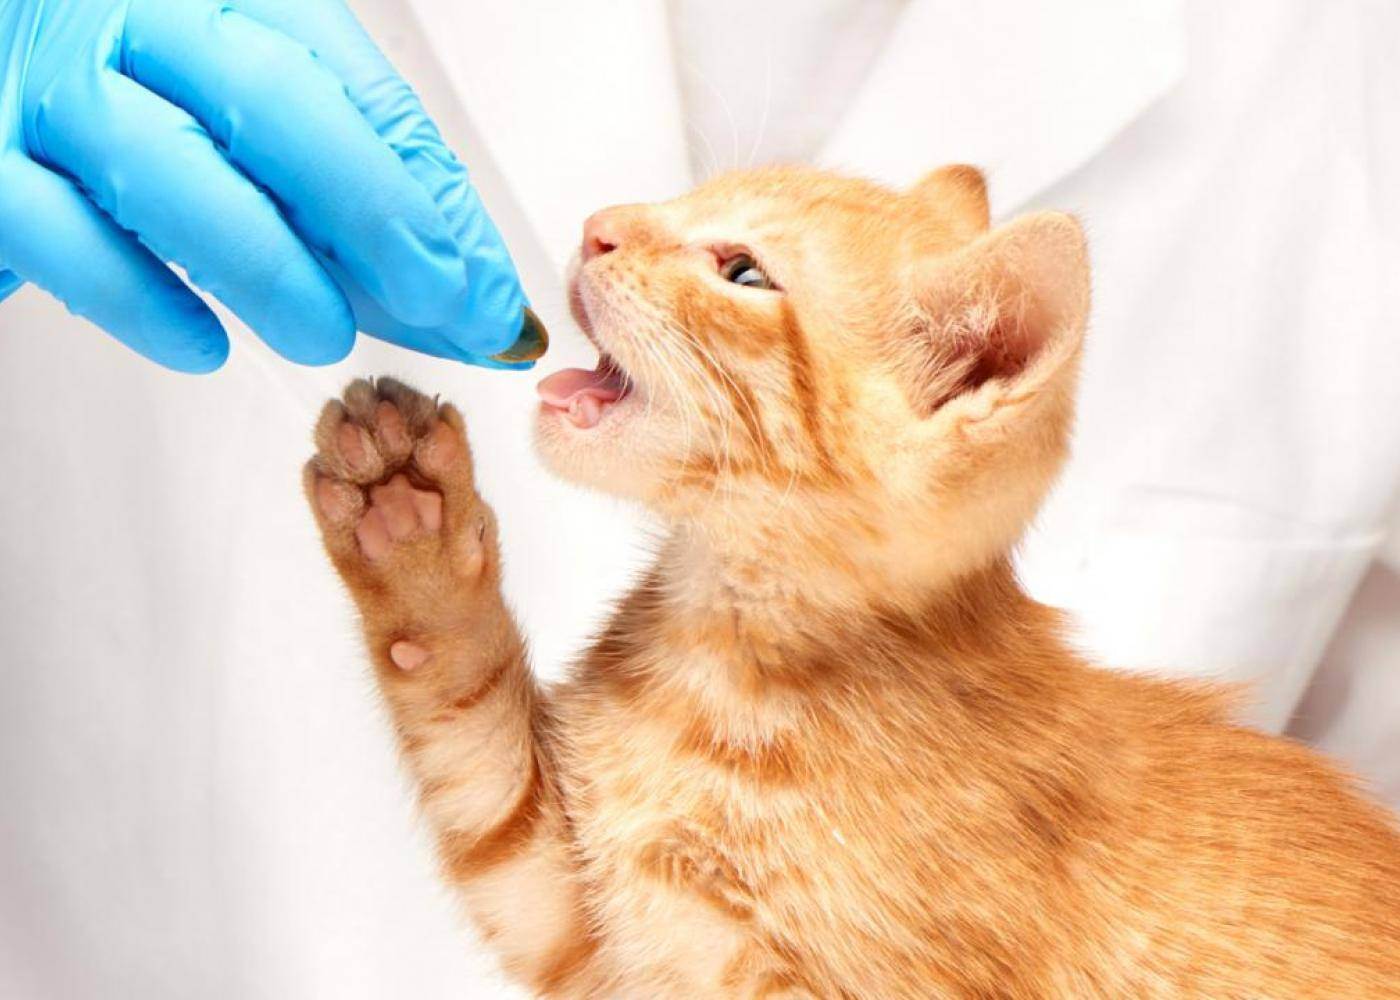 Токсоплазмоз у кошек: симптомы, лечение | zoosecrets